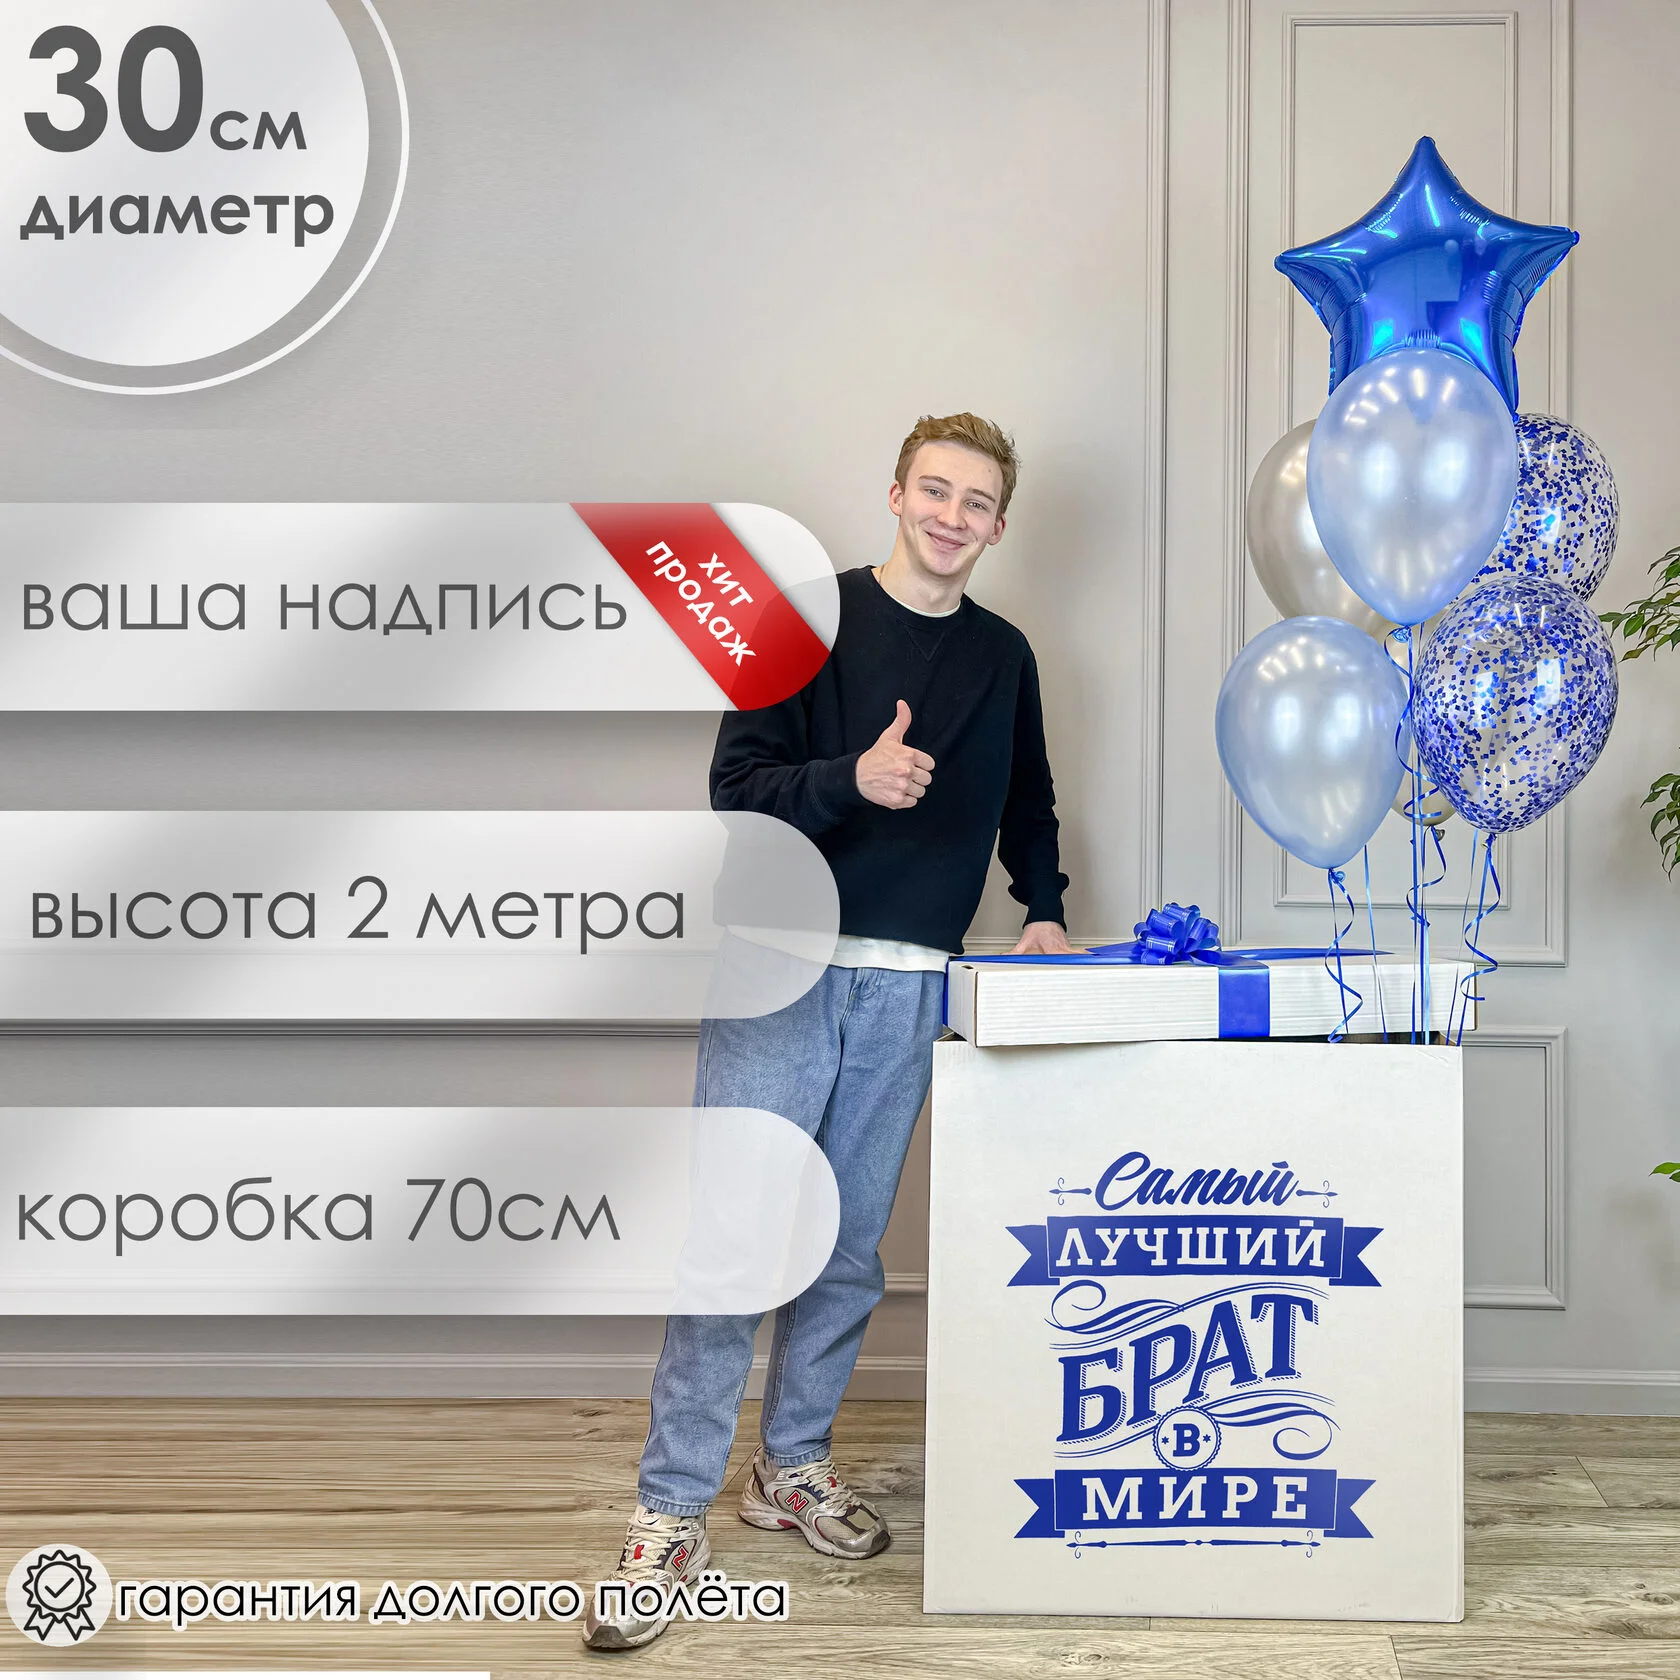 Индивидуальная надпись, наклейка, принт на воздушных шарах под заказ в Москве